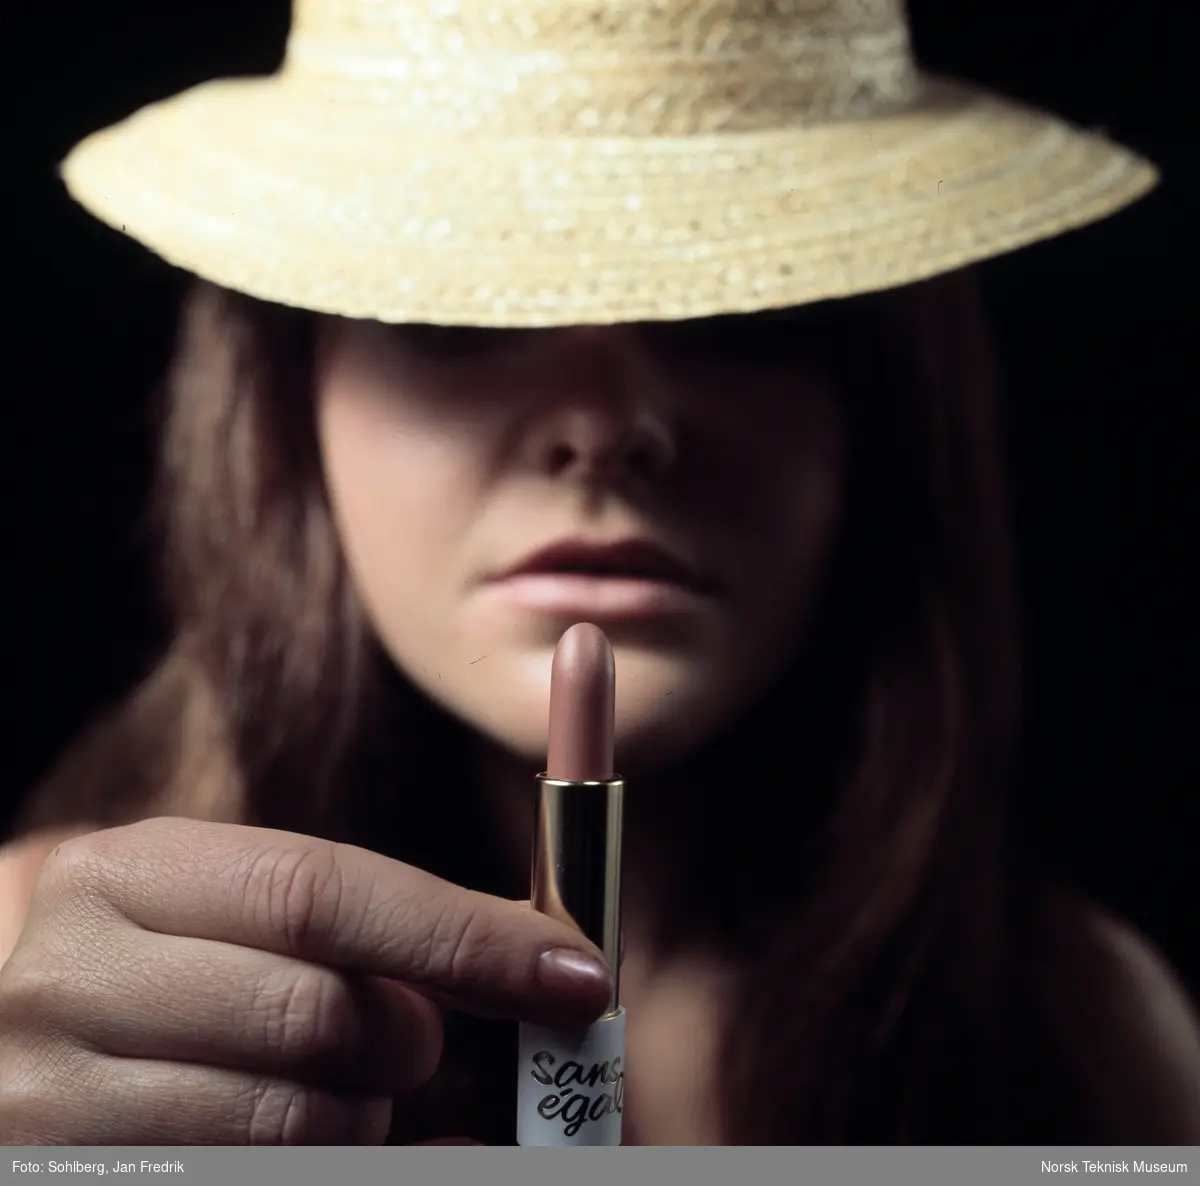 Reklamefoto for leppestift. Nærbilde av kvinne med hatt som holder en leppestift opp foran ansiktet sitt.